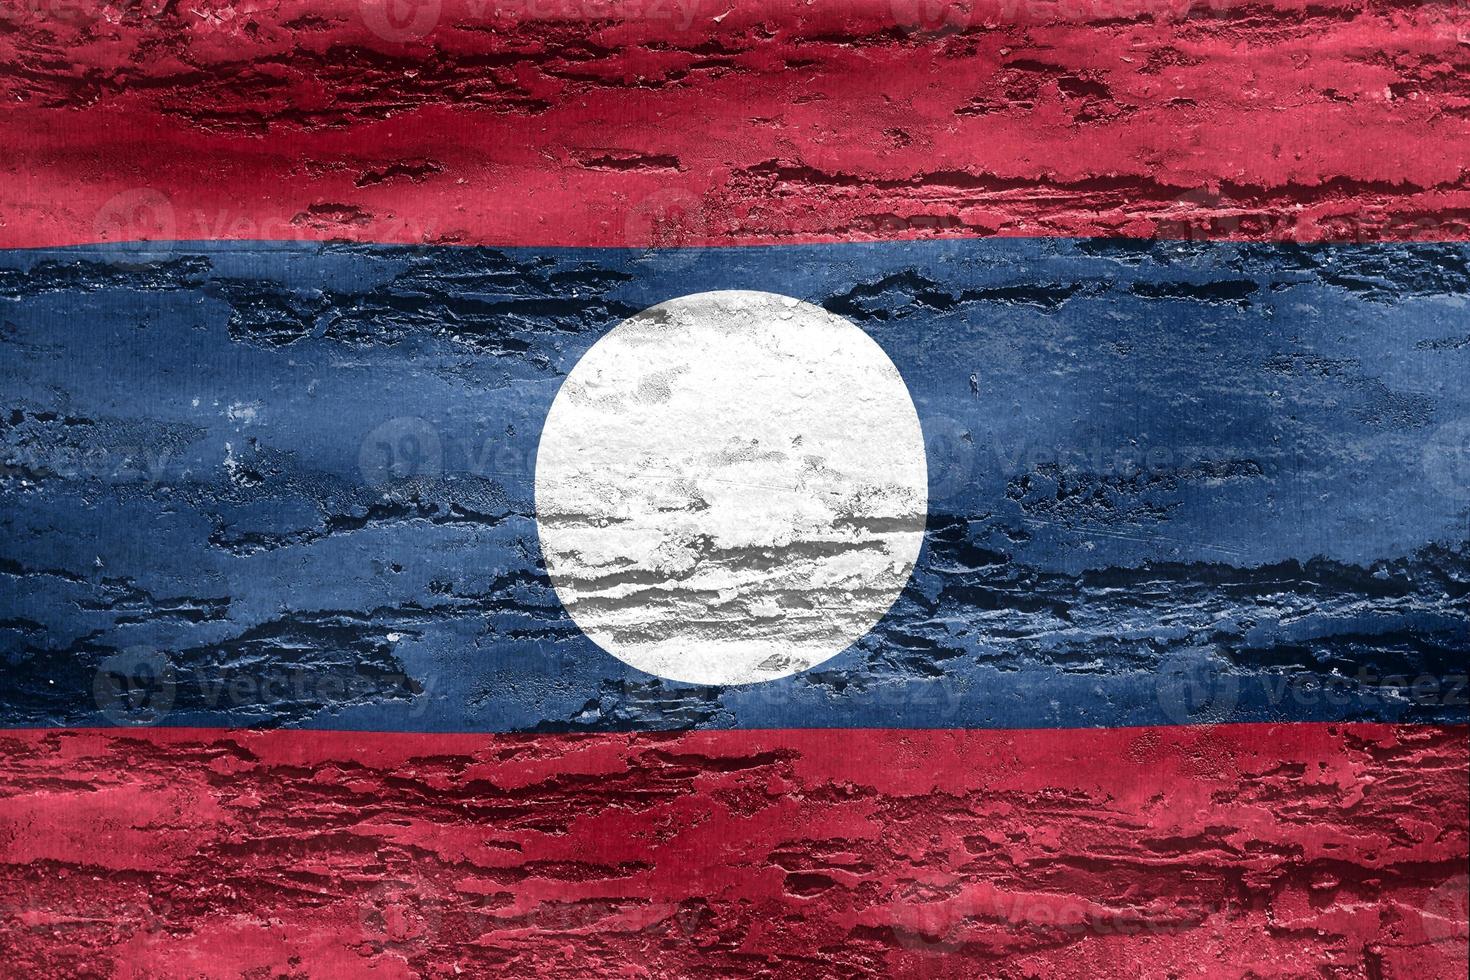 3d-illustrazione di una bandiera del laos - bandiera sventolante realistica del tessuto foto